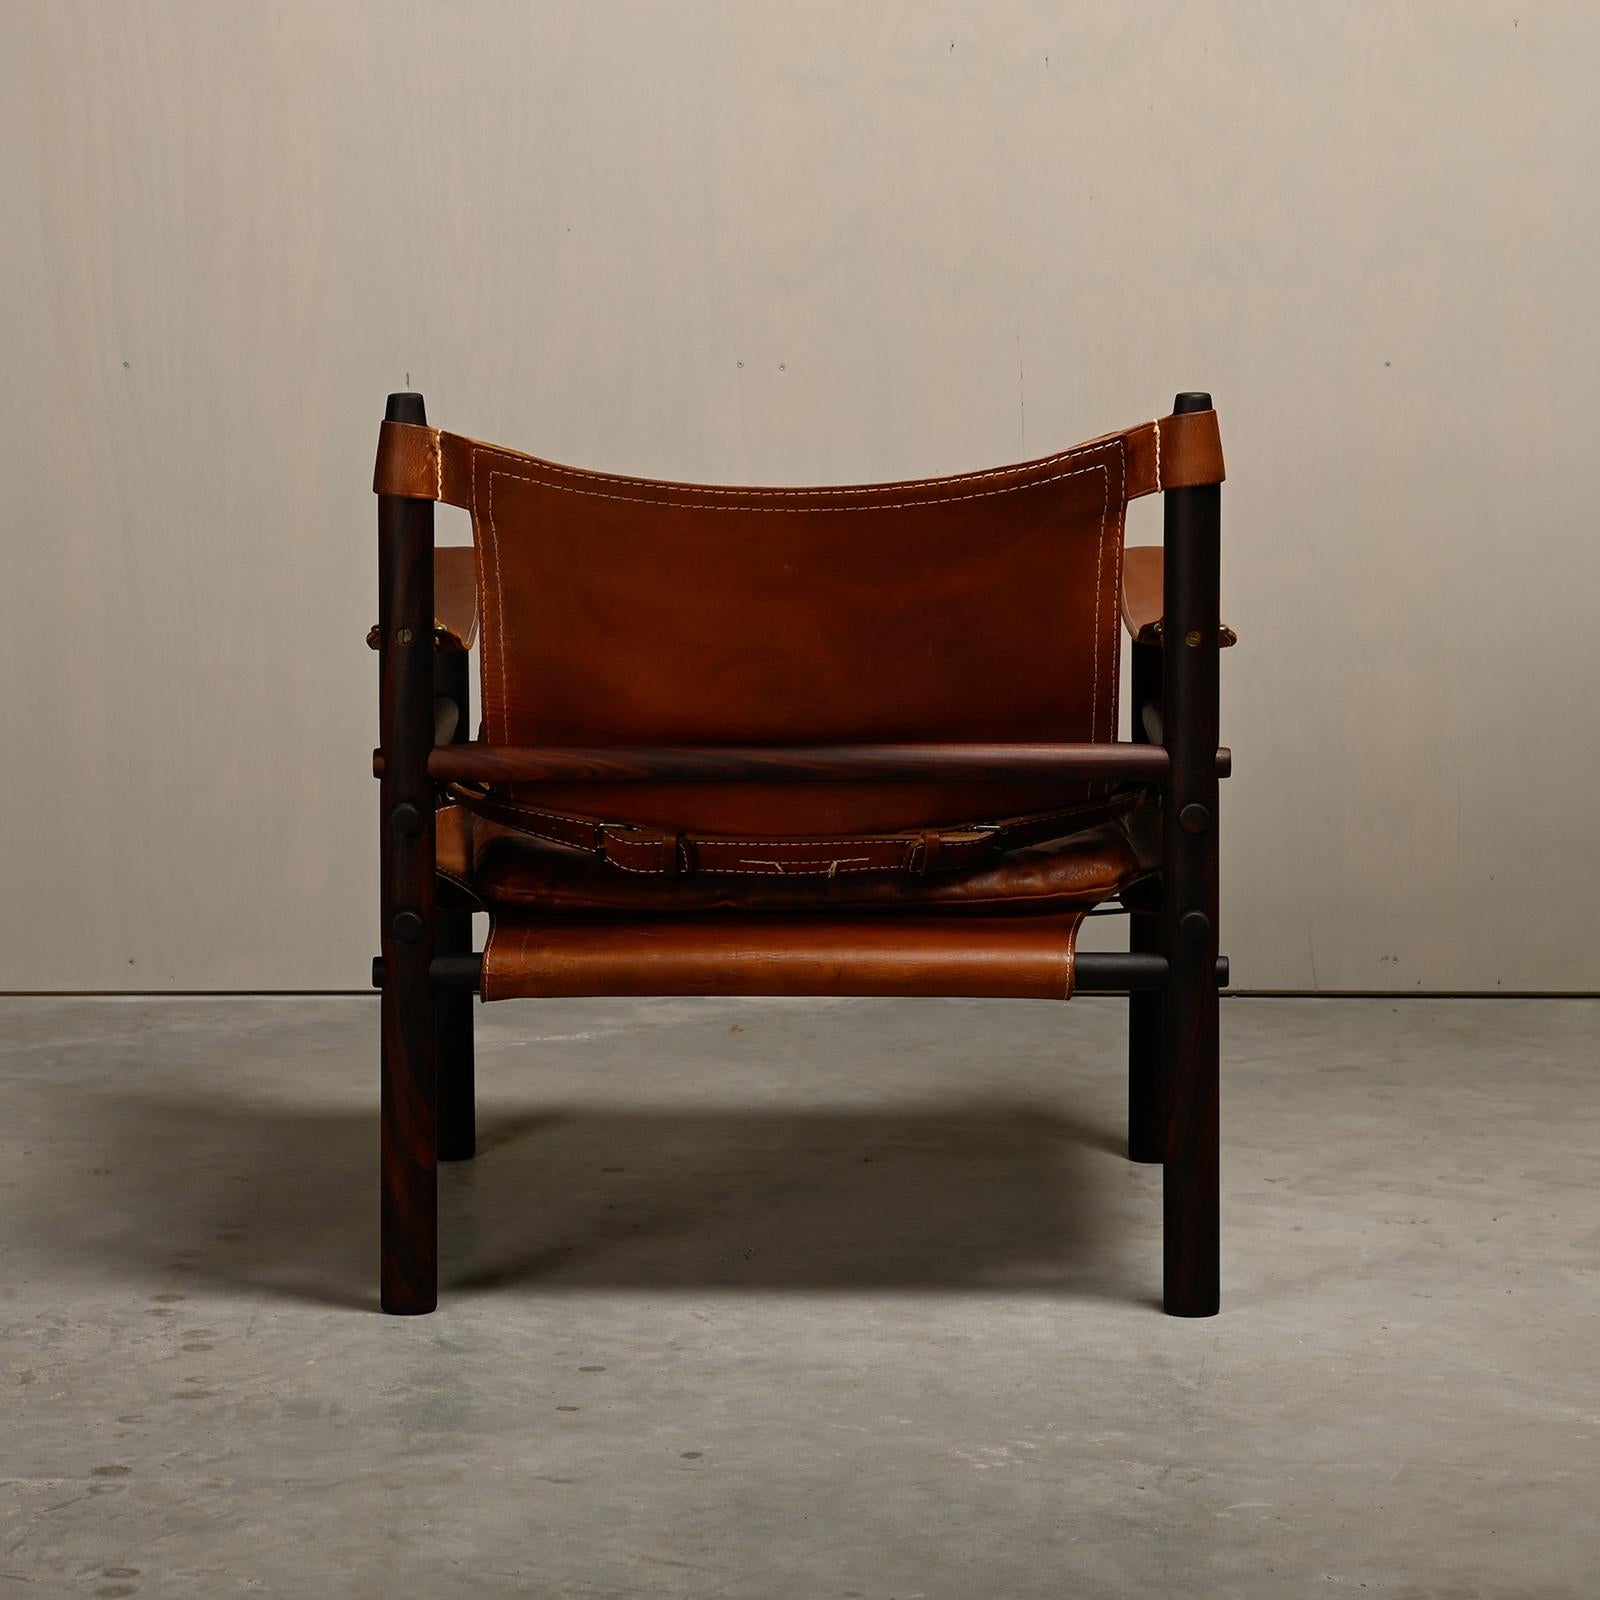 Cuir Chaise longue Sirocco Safari d'Arne Norell en bois et cuir brun foncé, Wood Wood. en vente